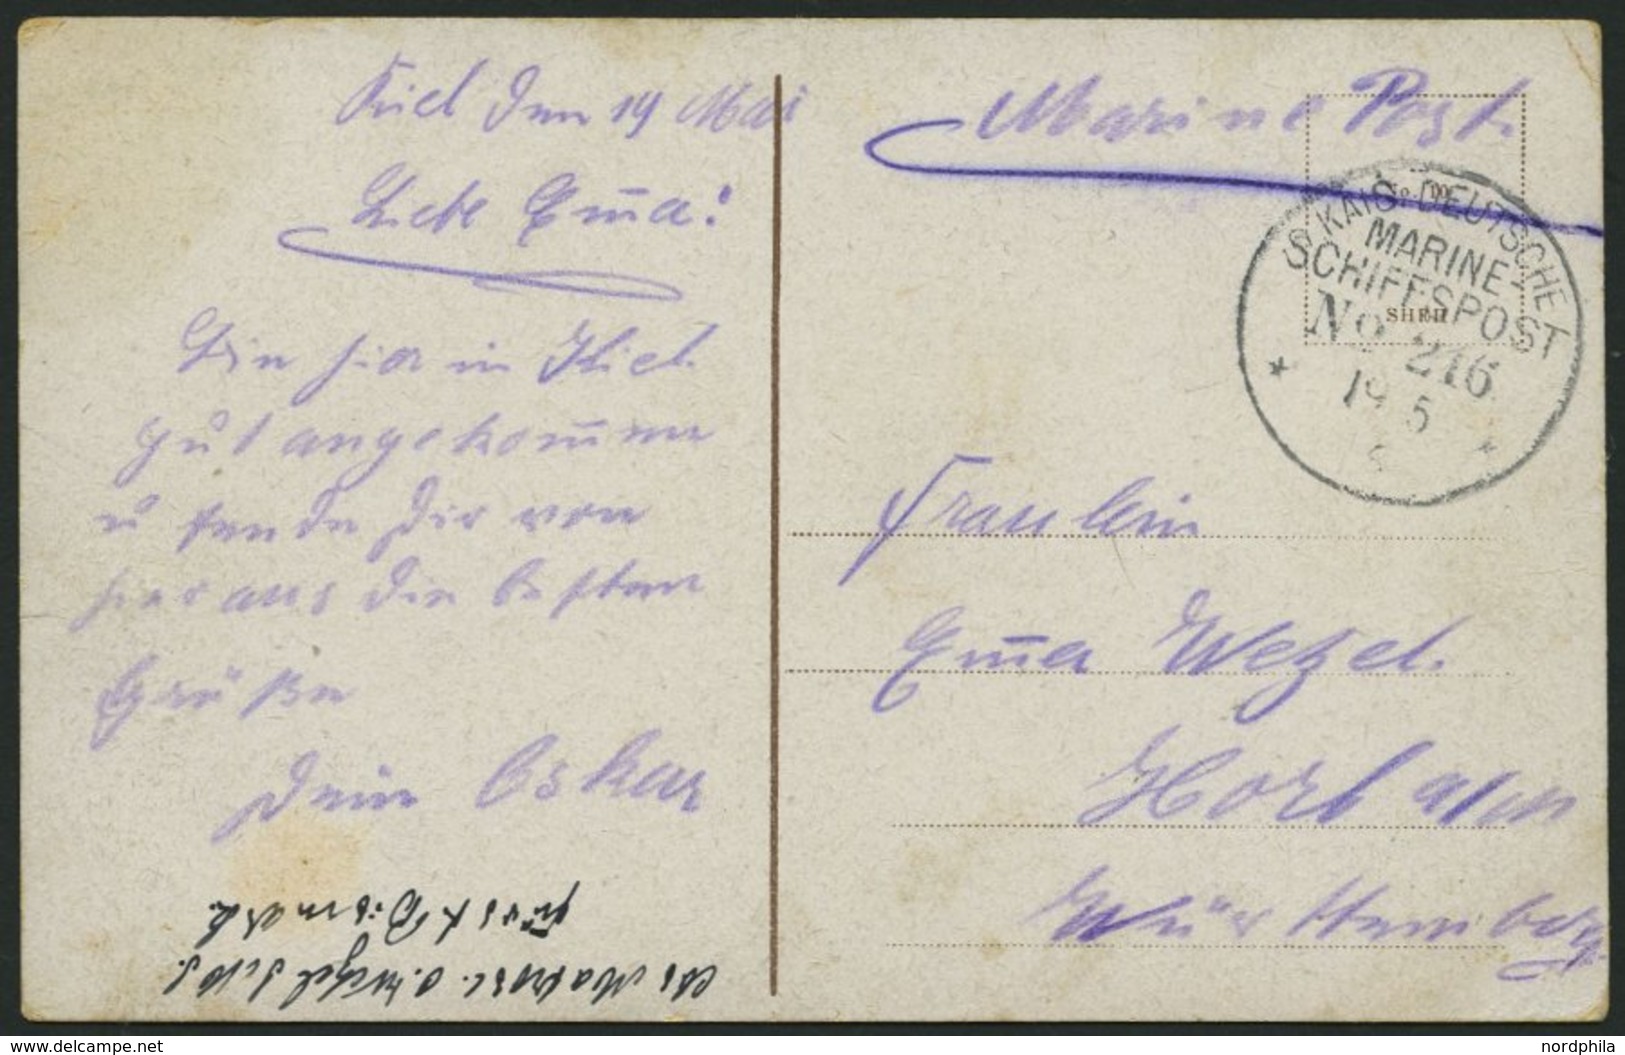 MSP VON 1914 - 1918 216 (Großer Kreuzer FÜRST BISMARK), 19.5.1916, Feldpost-Ansichtskarte Von Bord Der Fürst Bismark, Pr - Marittimi